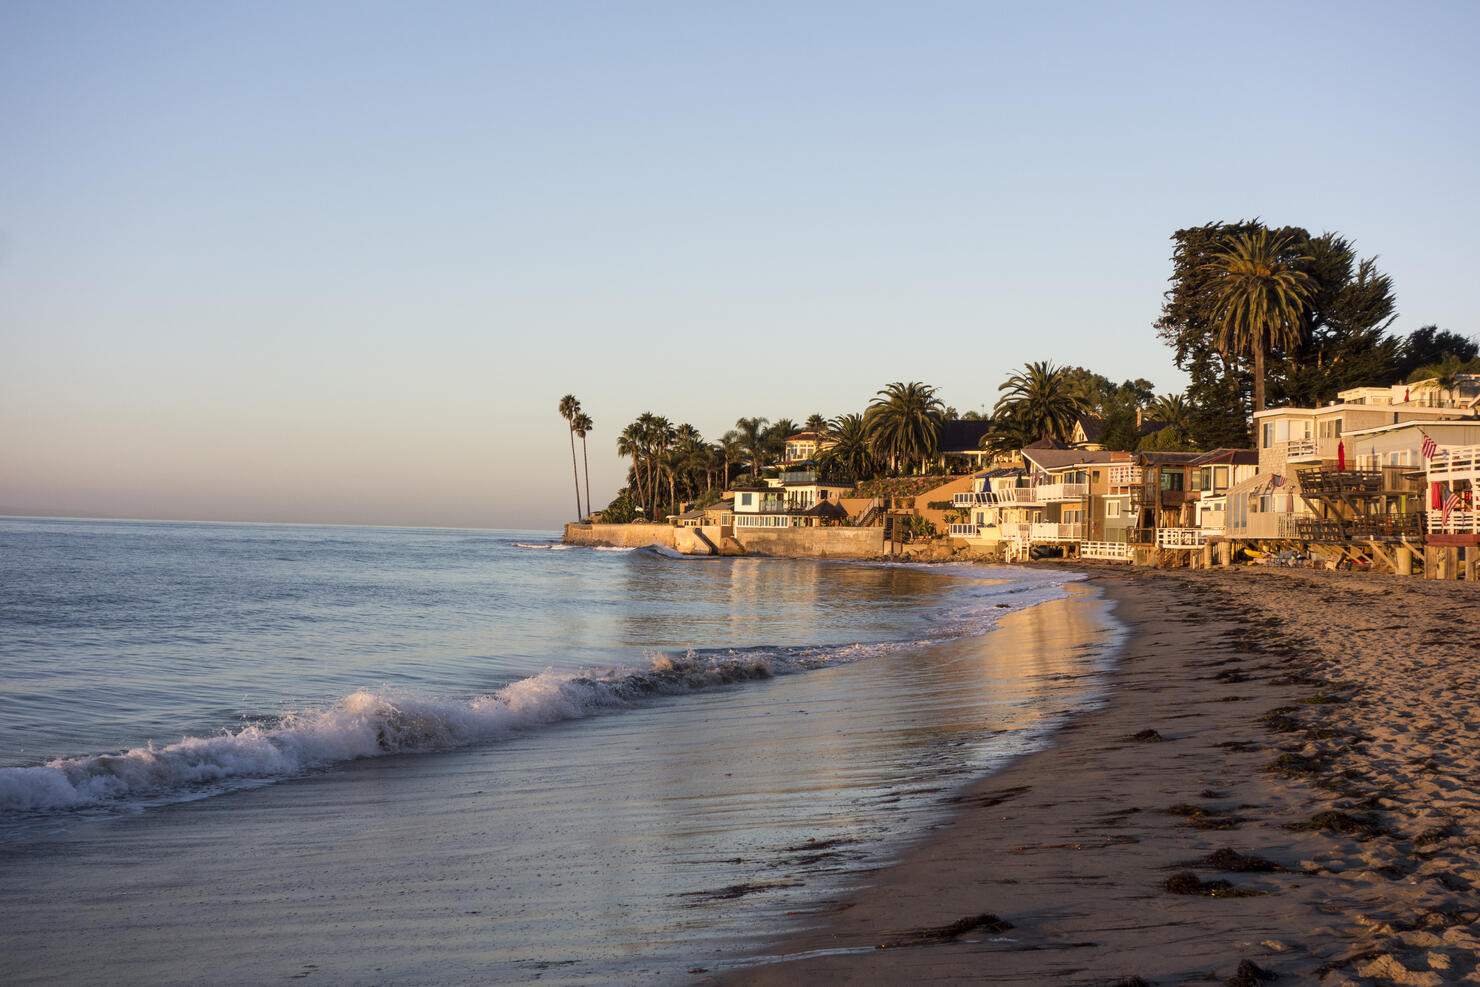 Miramar beach in Montecito, Santa Barbara, California, USA